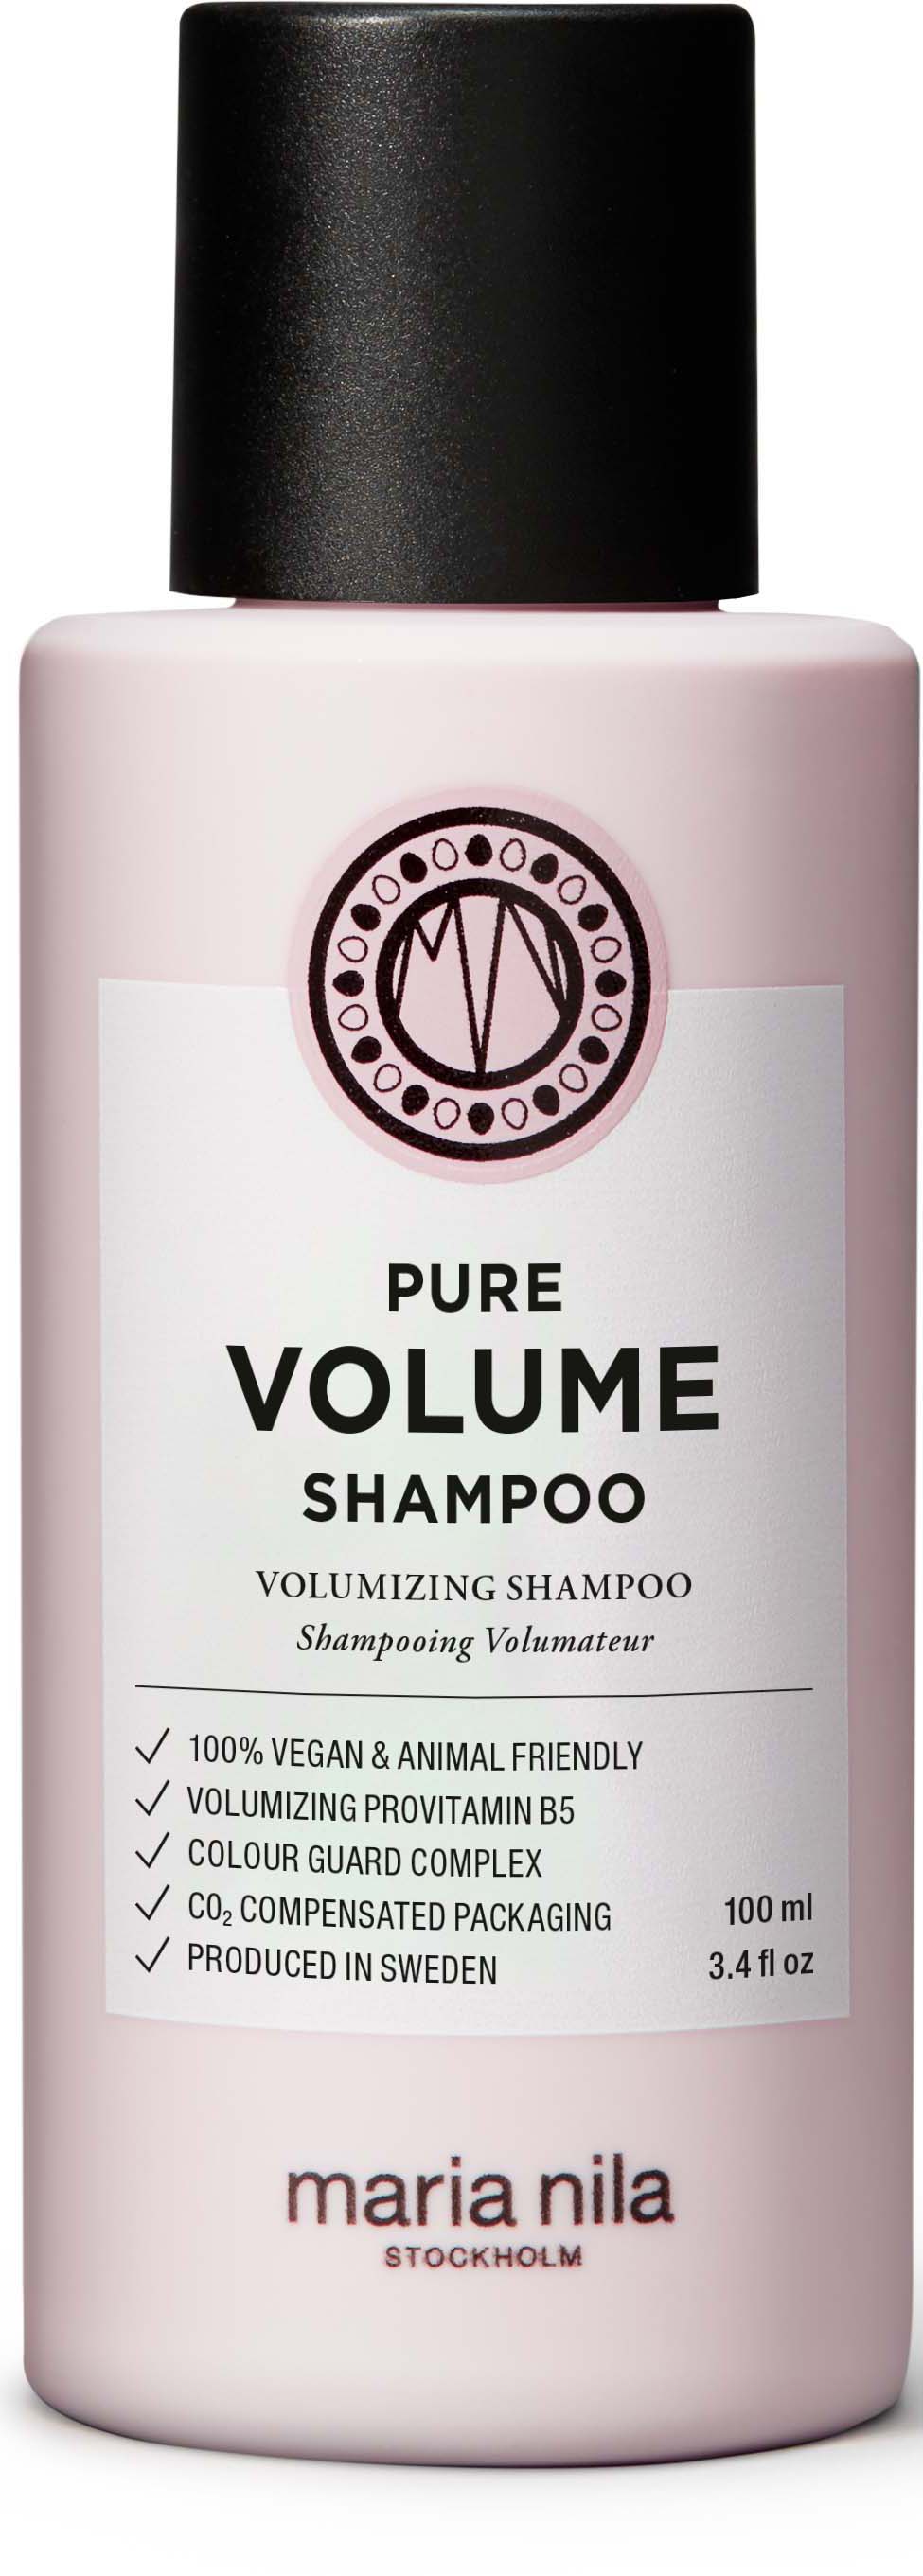 Maria Nila Palett Shampoo Pure Volume 100ml